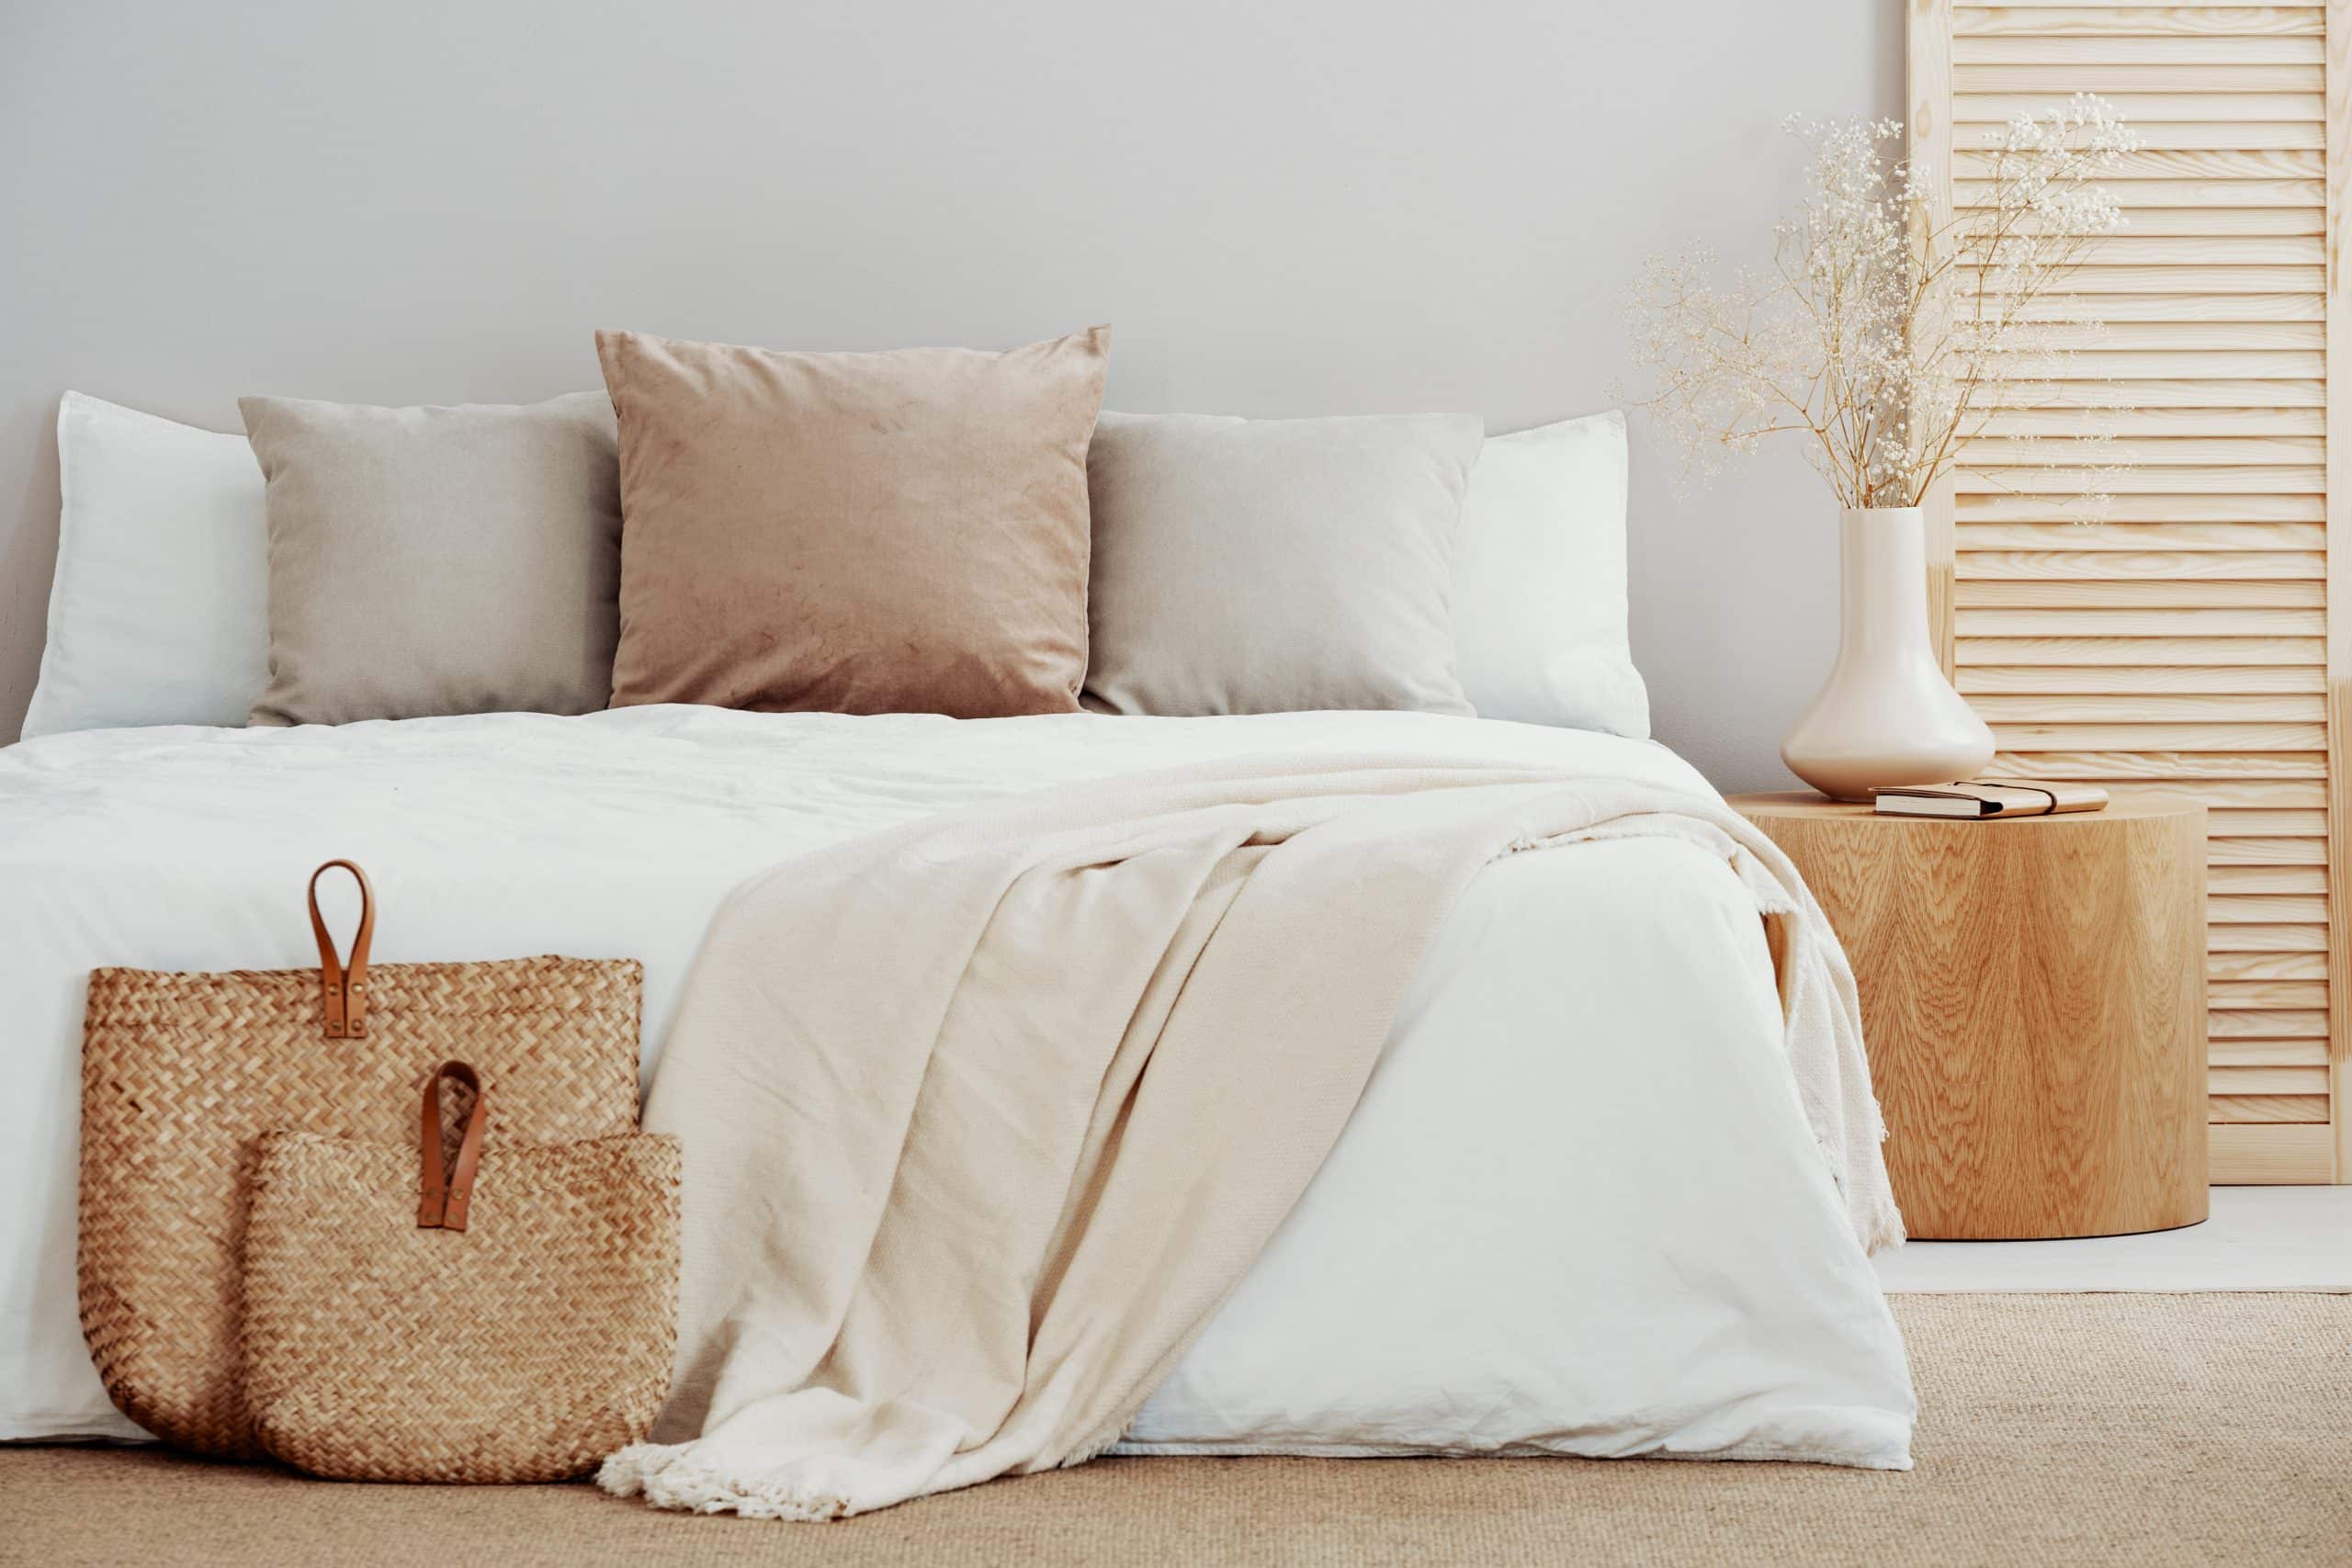 Łóżko z białą pościelą hotelową i beżowymi poduszkami; obok naturalne dekoracje